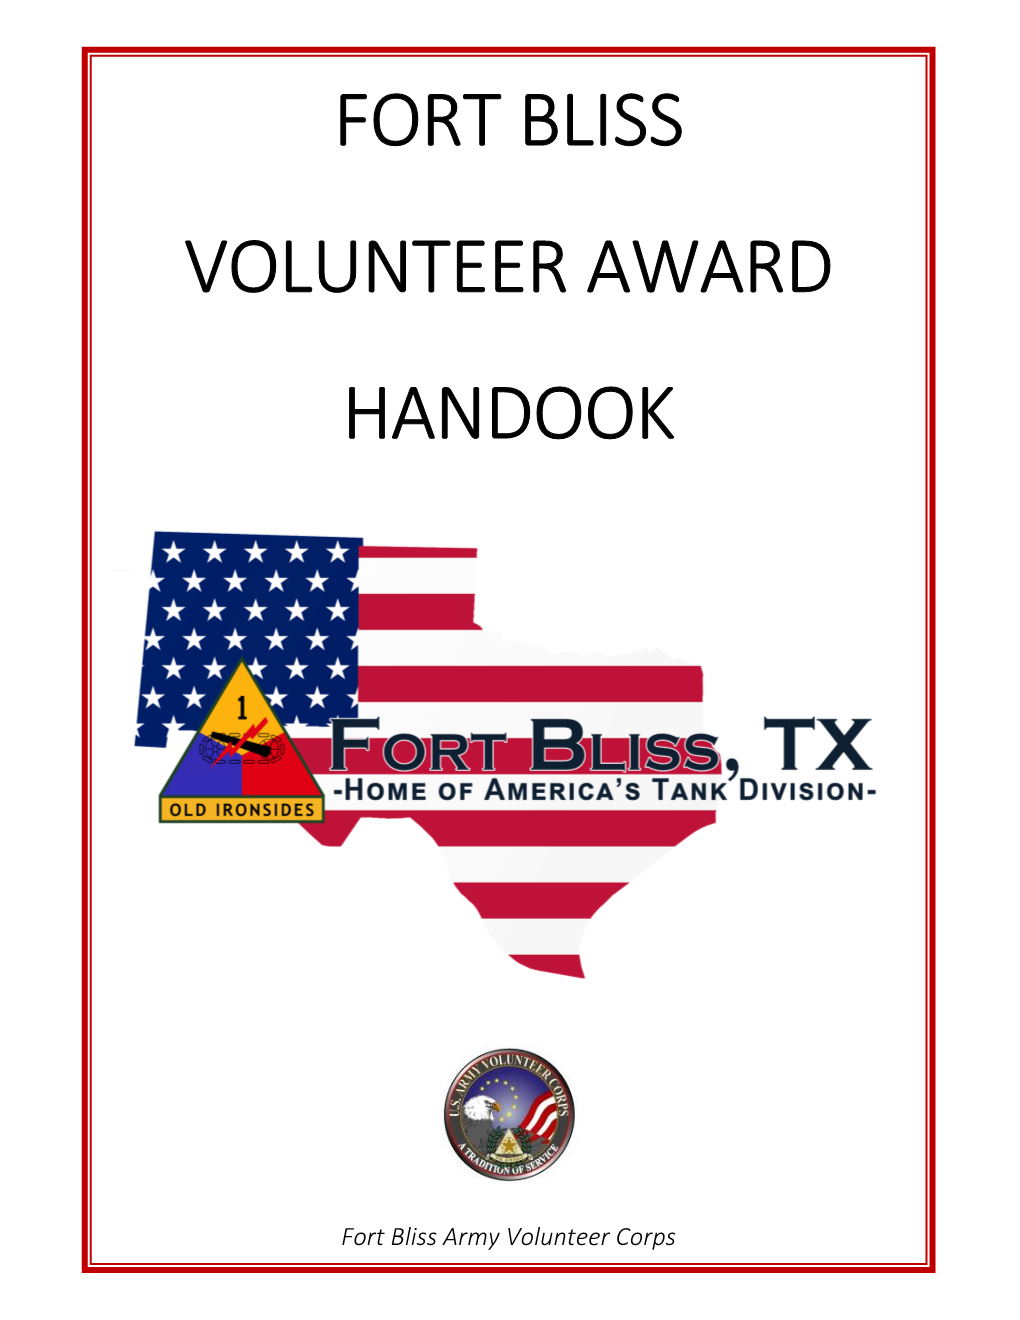 Fort Bliss Volunteer Award Handook